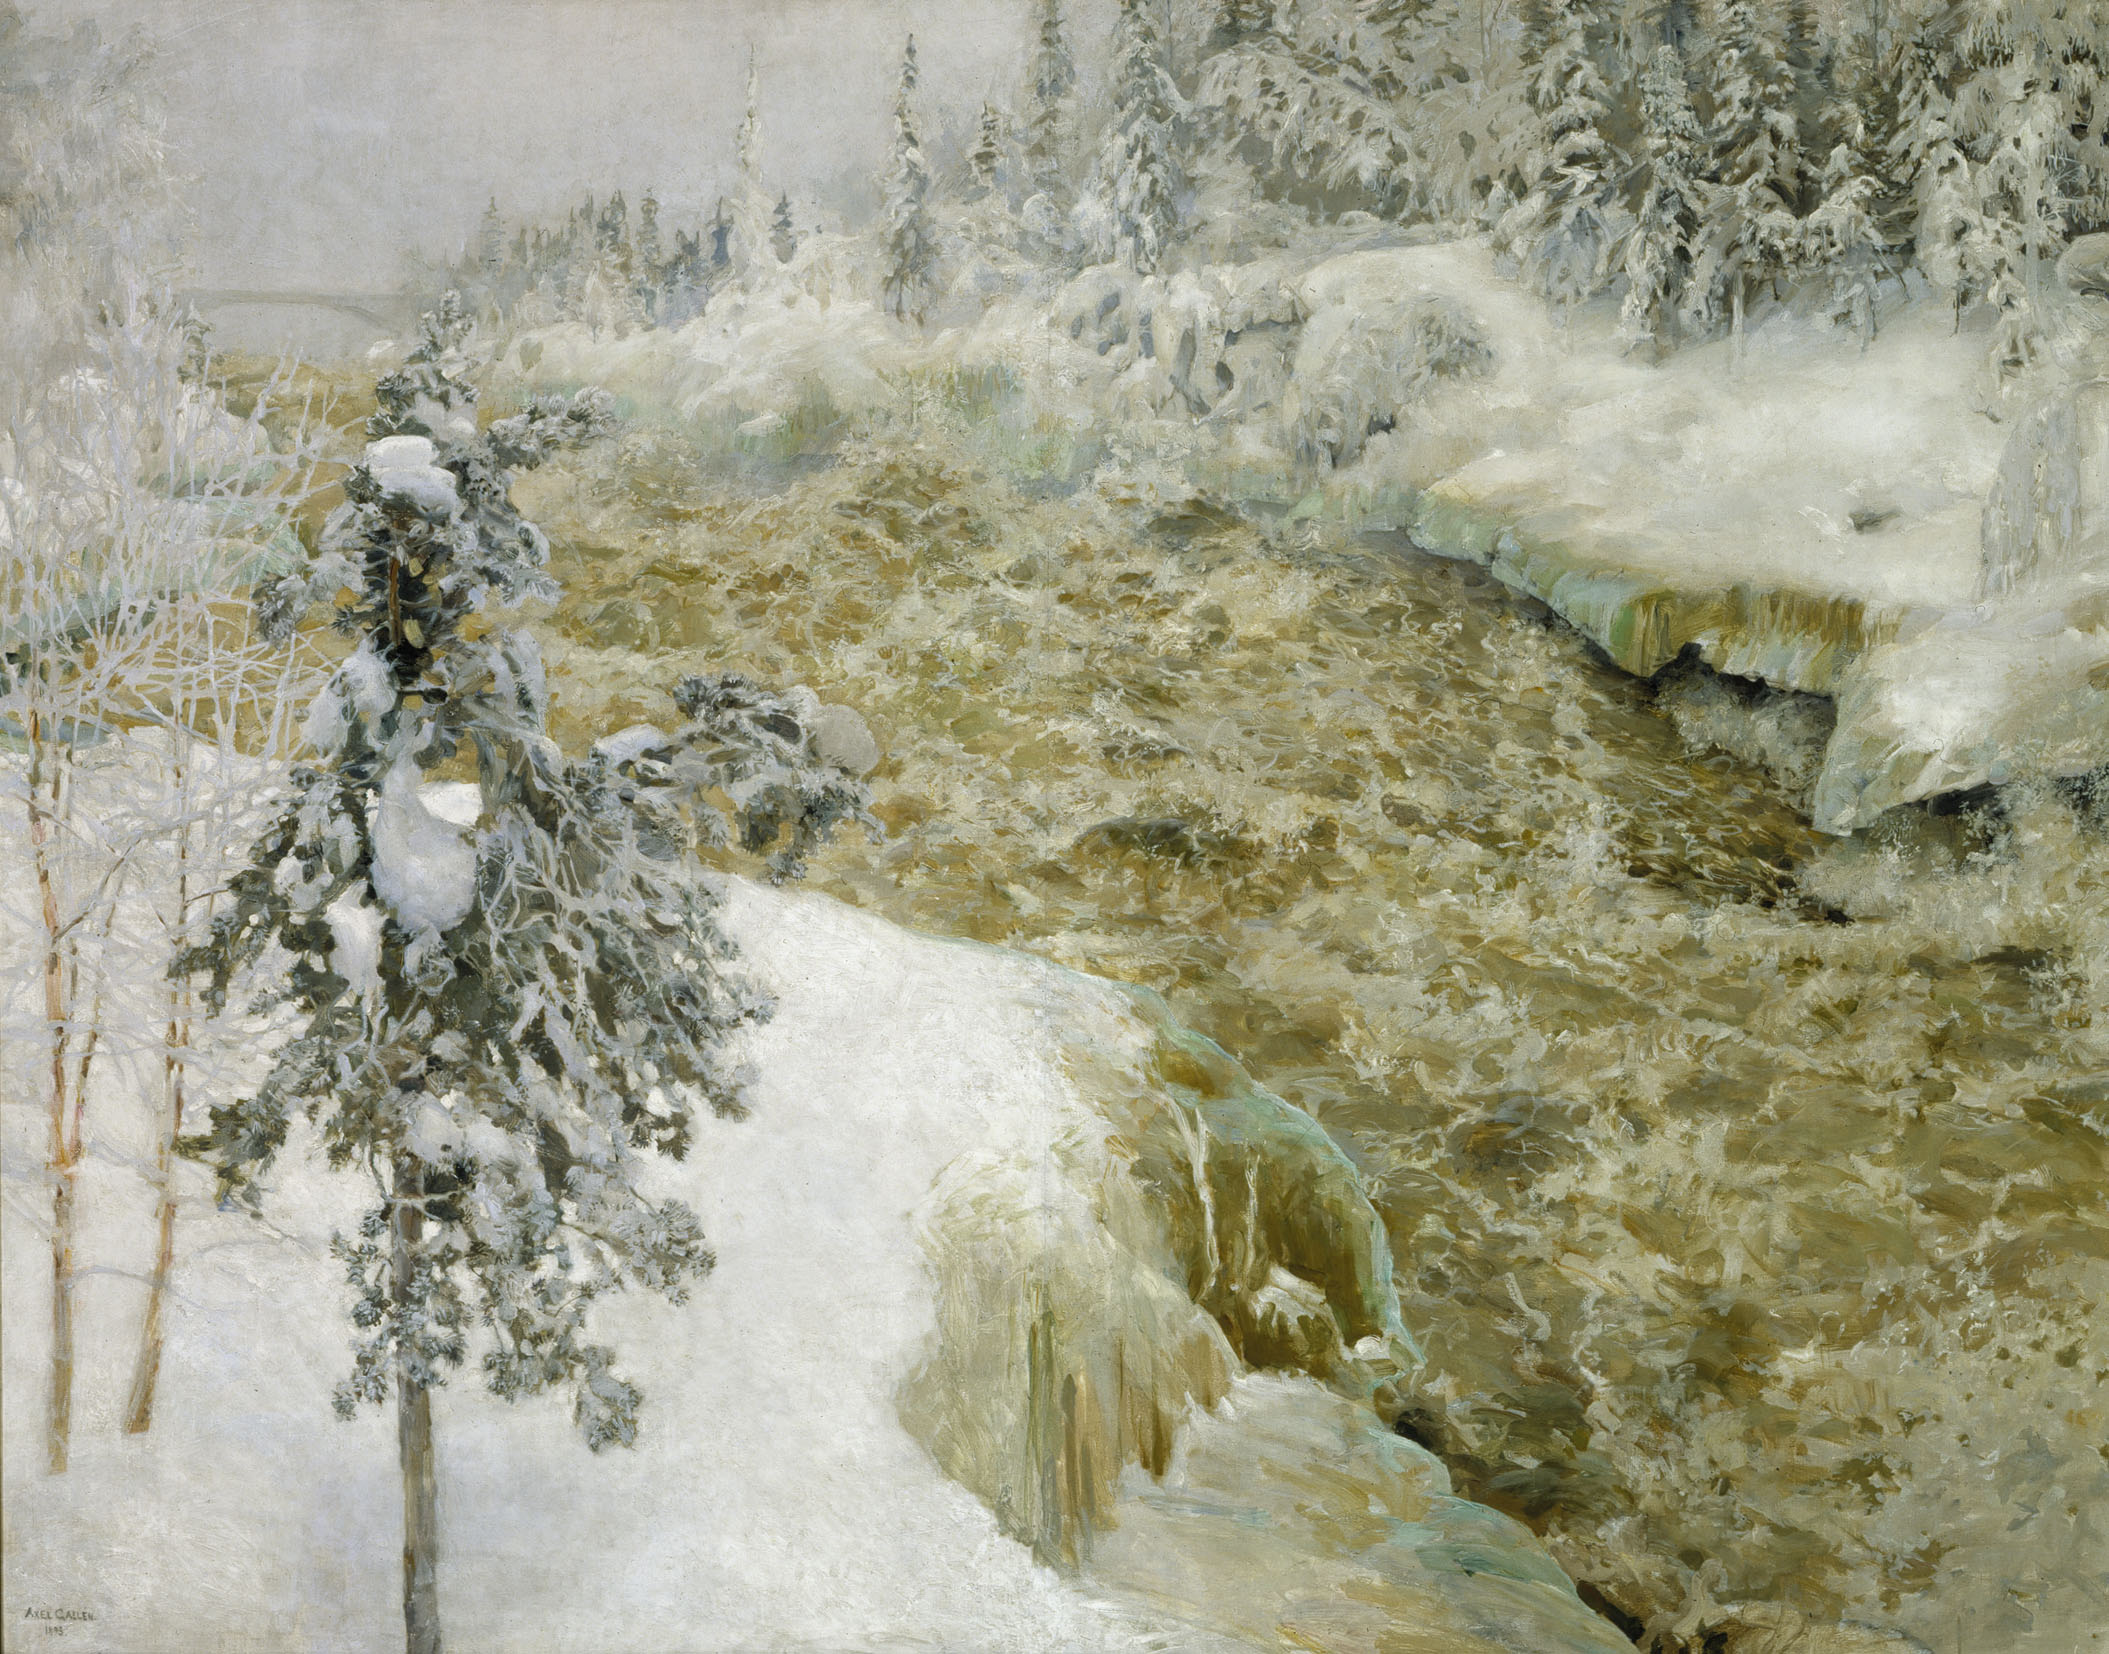 Χιονισμένοι καταρράκτες του Ιμάτρα by Άξελι Γκάλλεν-Κάλλελα - 1893 - 153 x 194 cm 